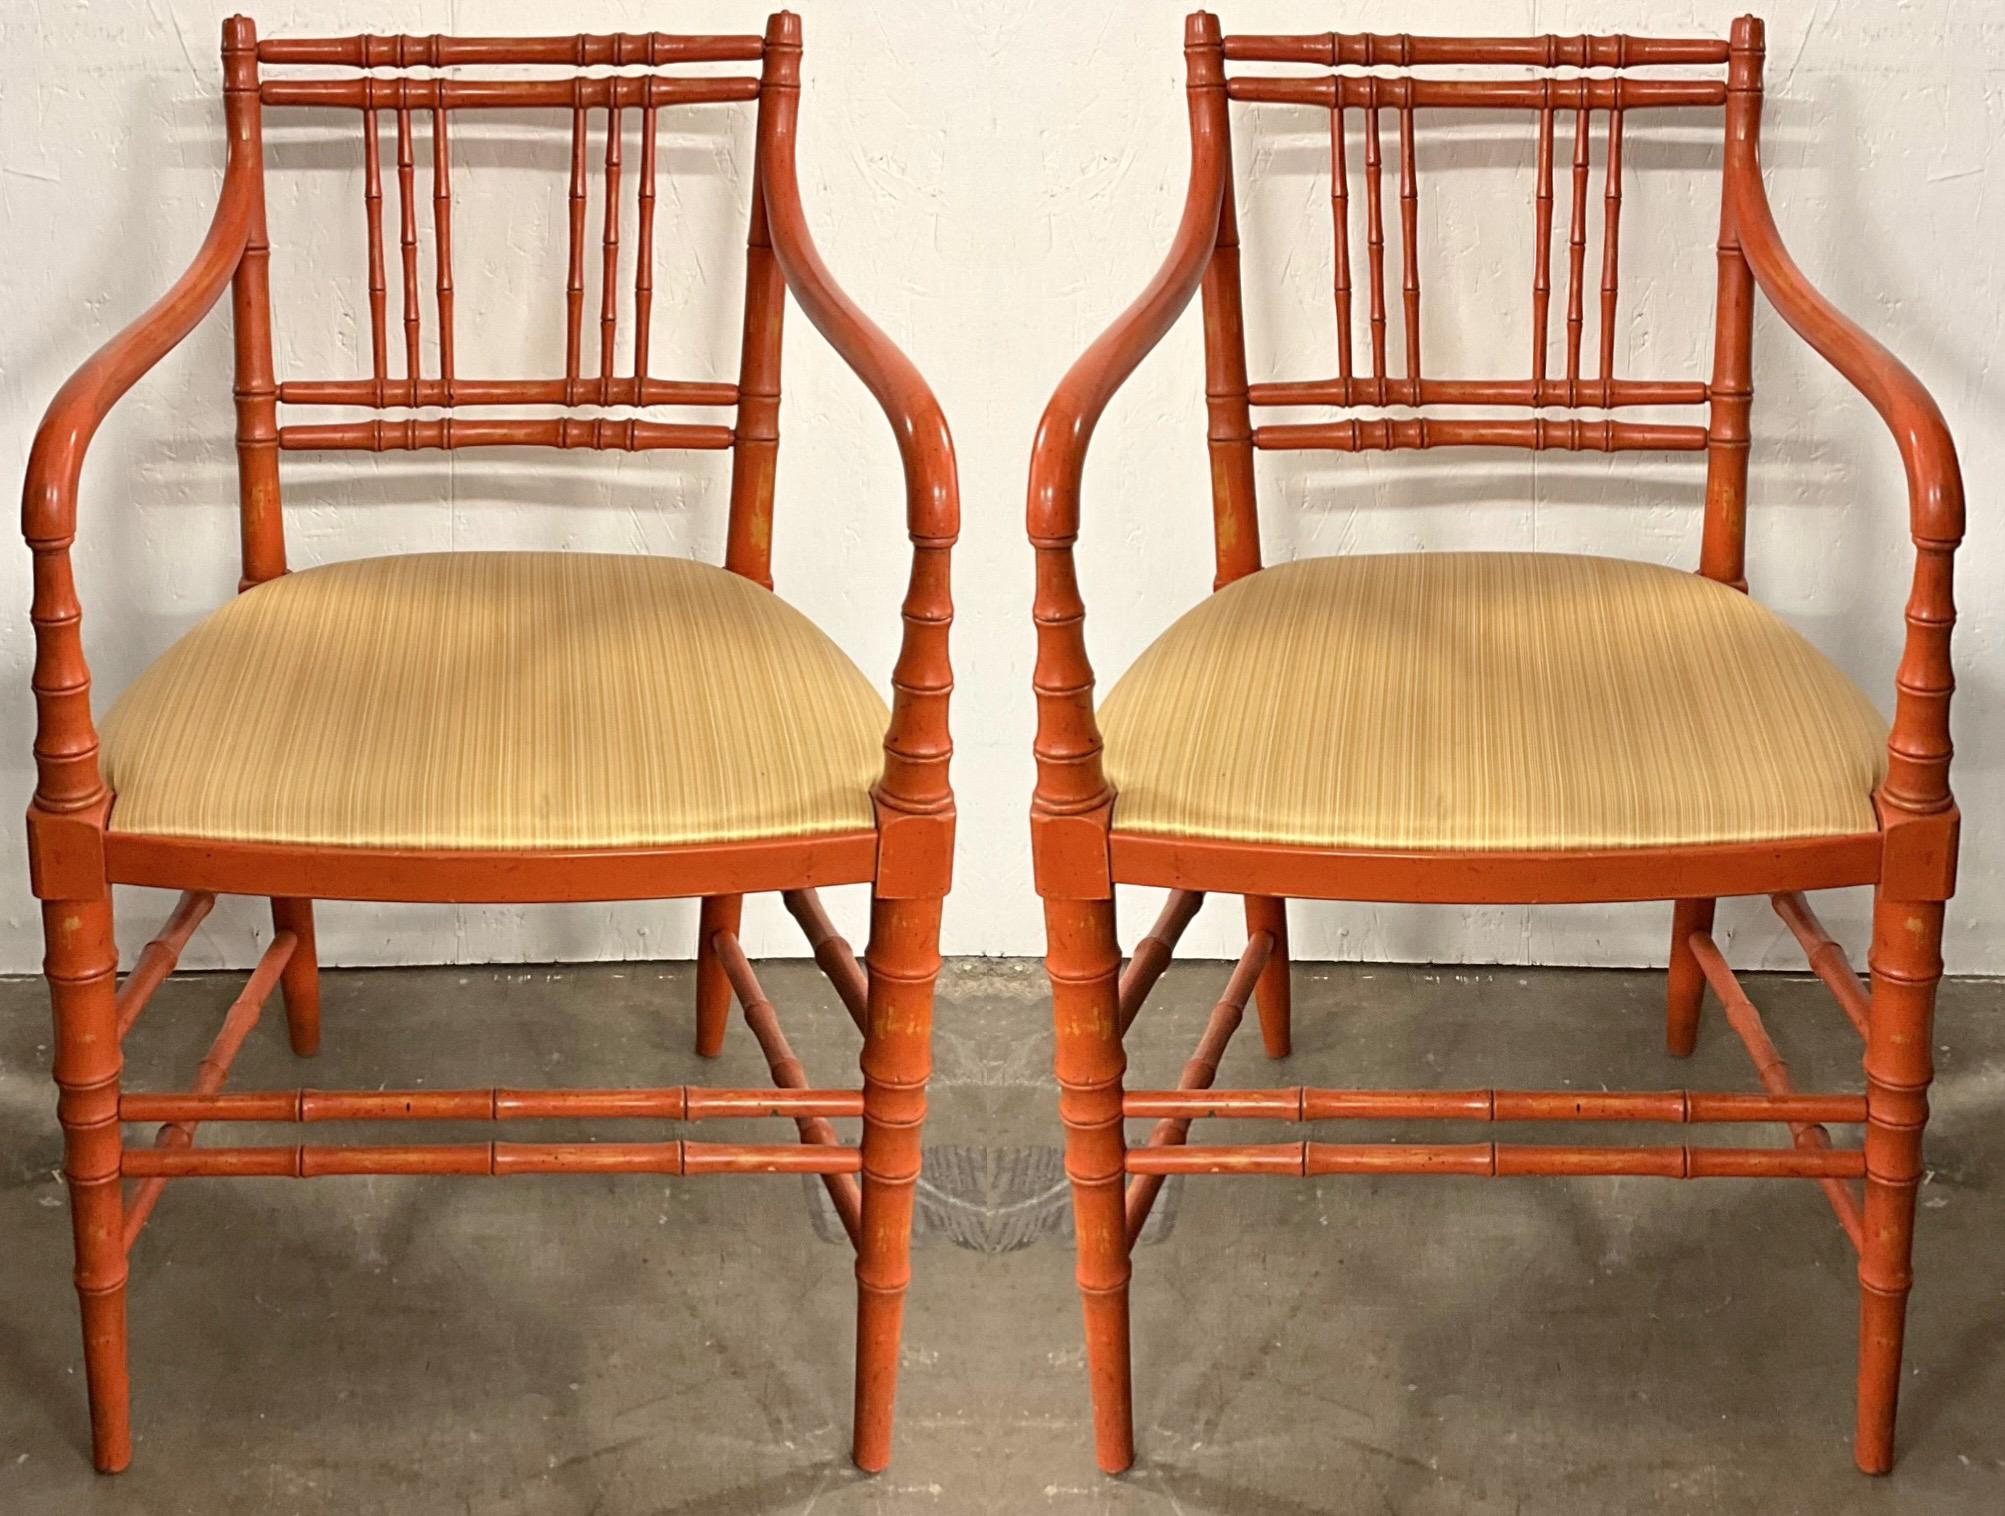 Dies ist ein Paar der 1950er Jahre Französisch Stil faux Bambus orange lackiert bergere Stühle. Die Polsterung ist Vintage und in sehr gutem Zustand. Obwohl die Polsterung den Anschein von Seide erweckt, handelt es sich höchstwahrscheinlich um ein